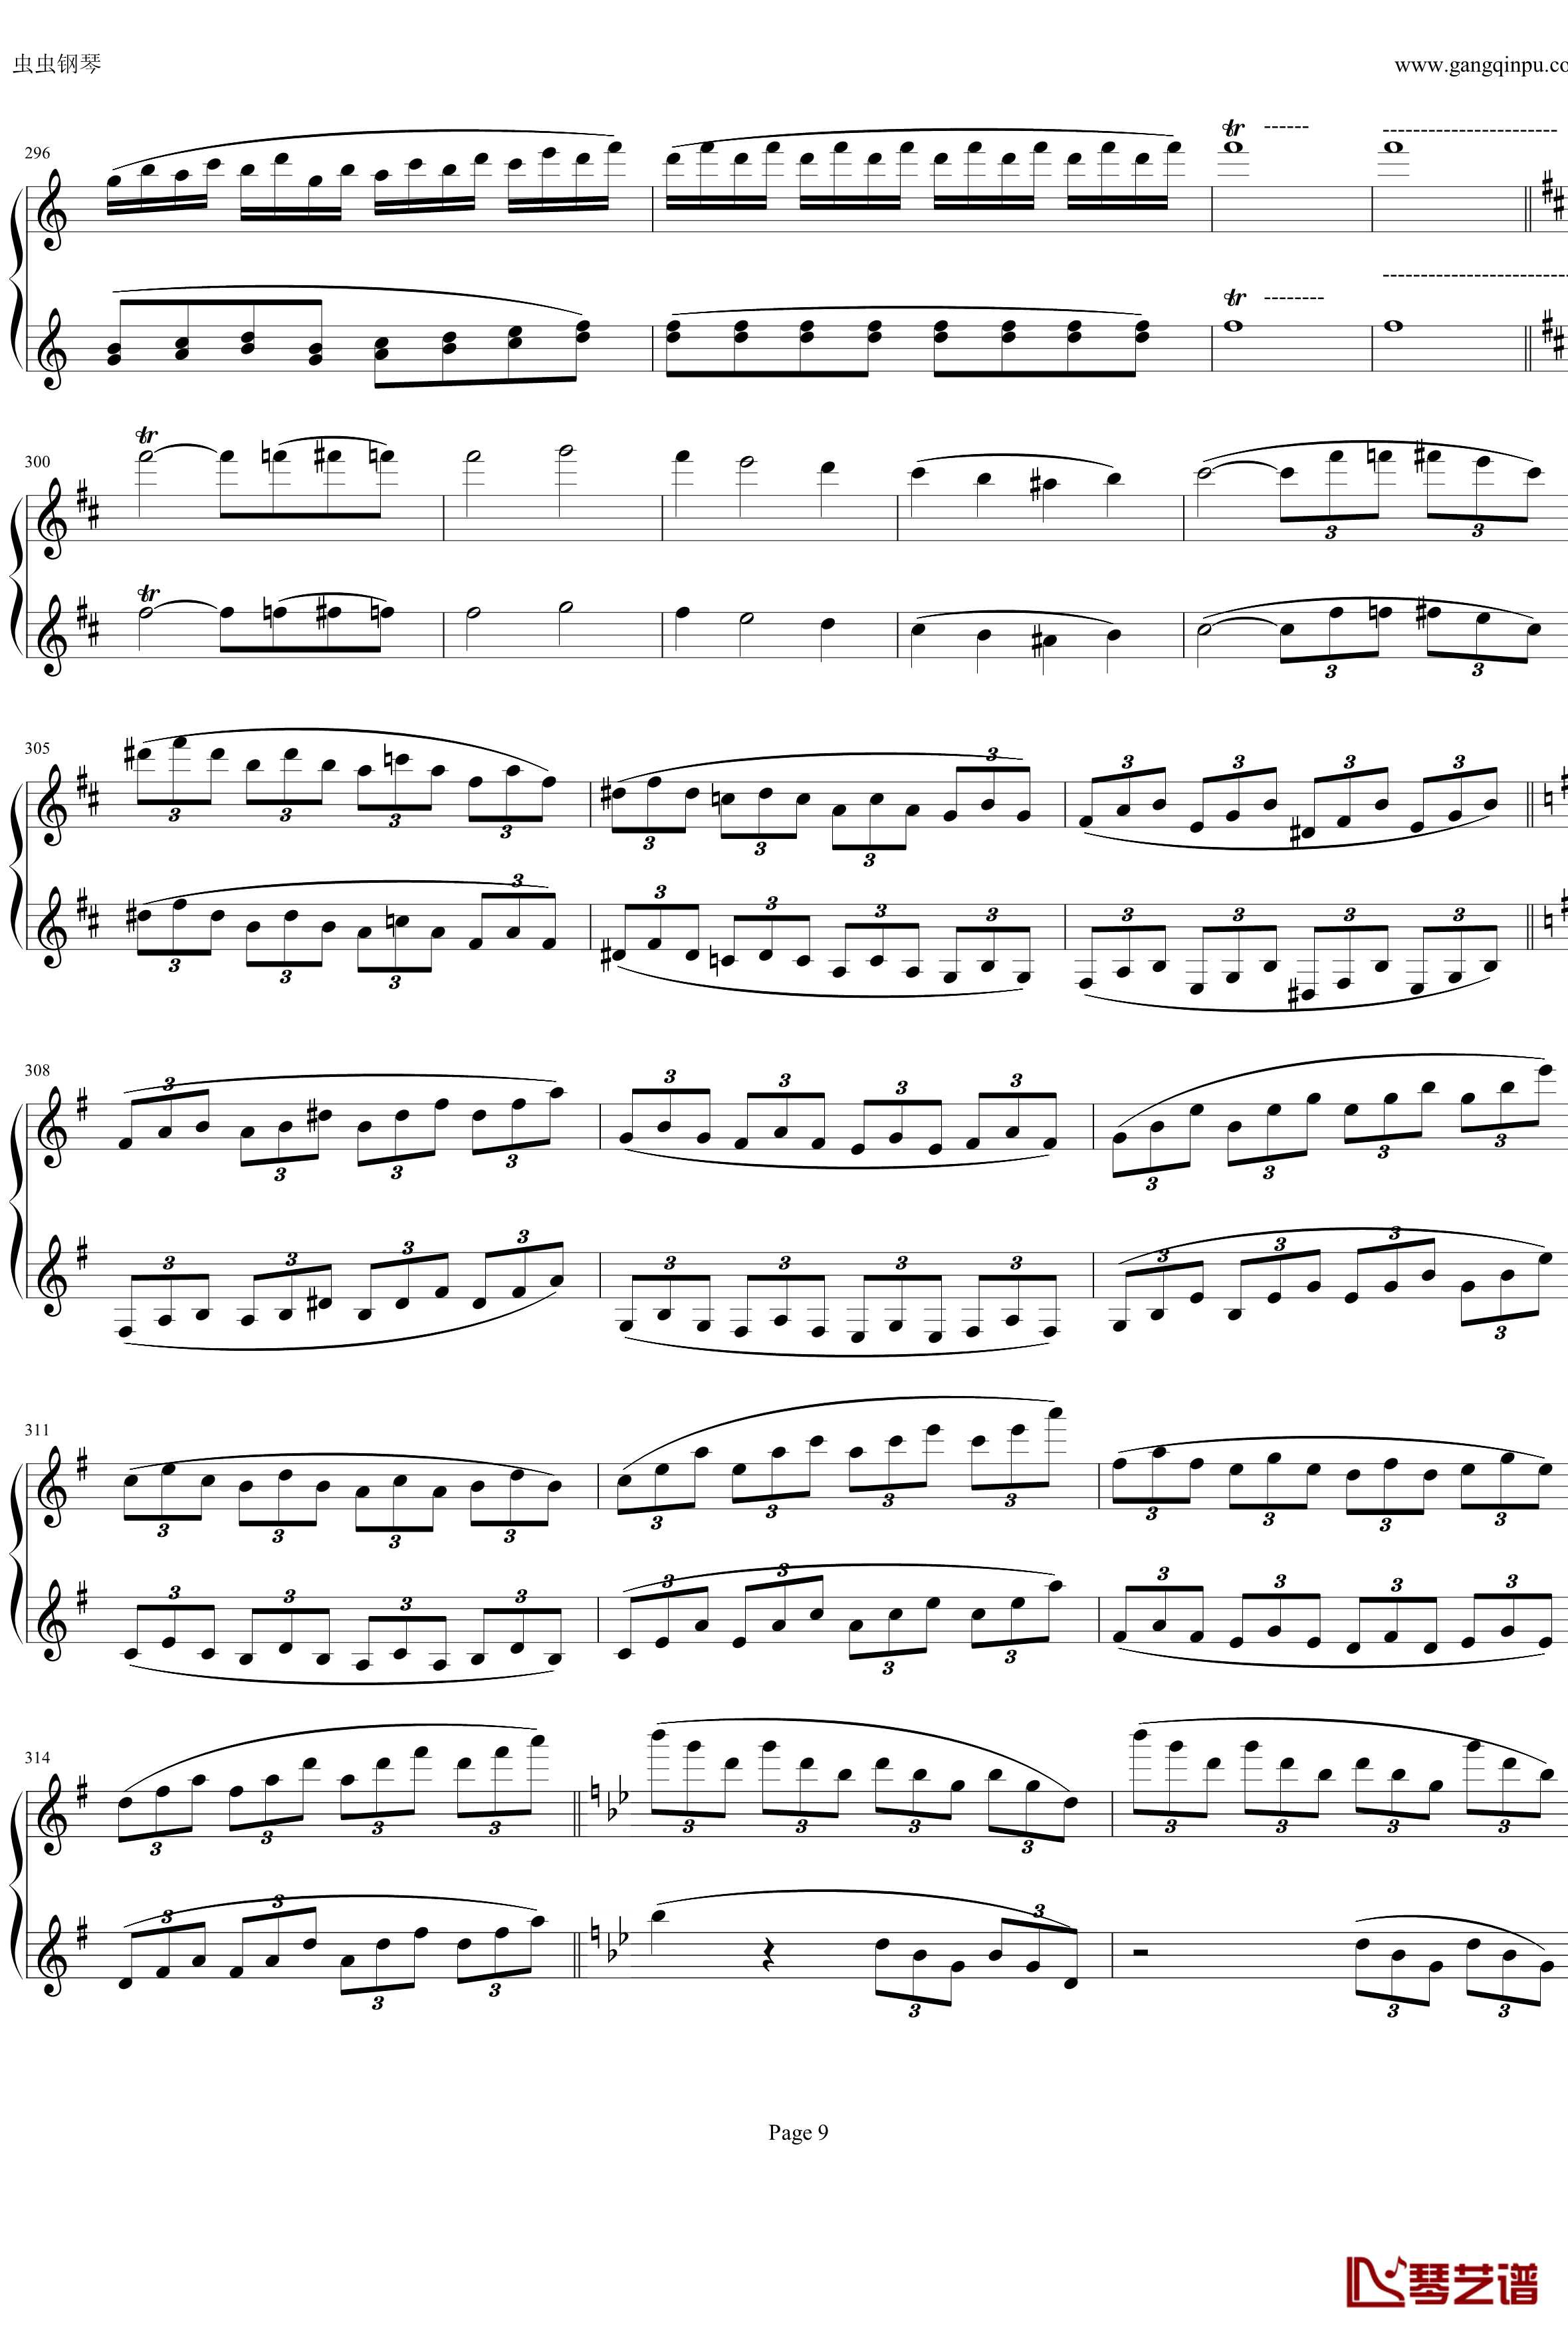 钢琴协奏曲Op61第一乐章钢琴谱-贝多芬-beethoven9